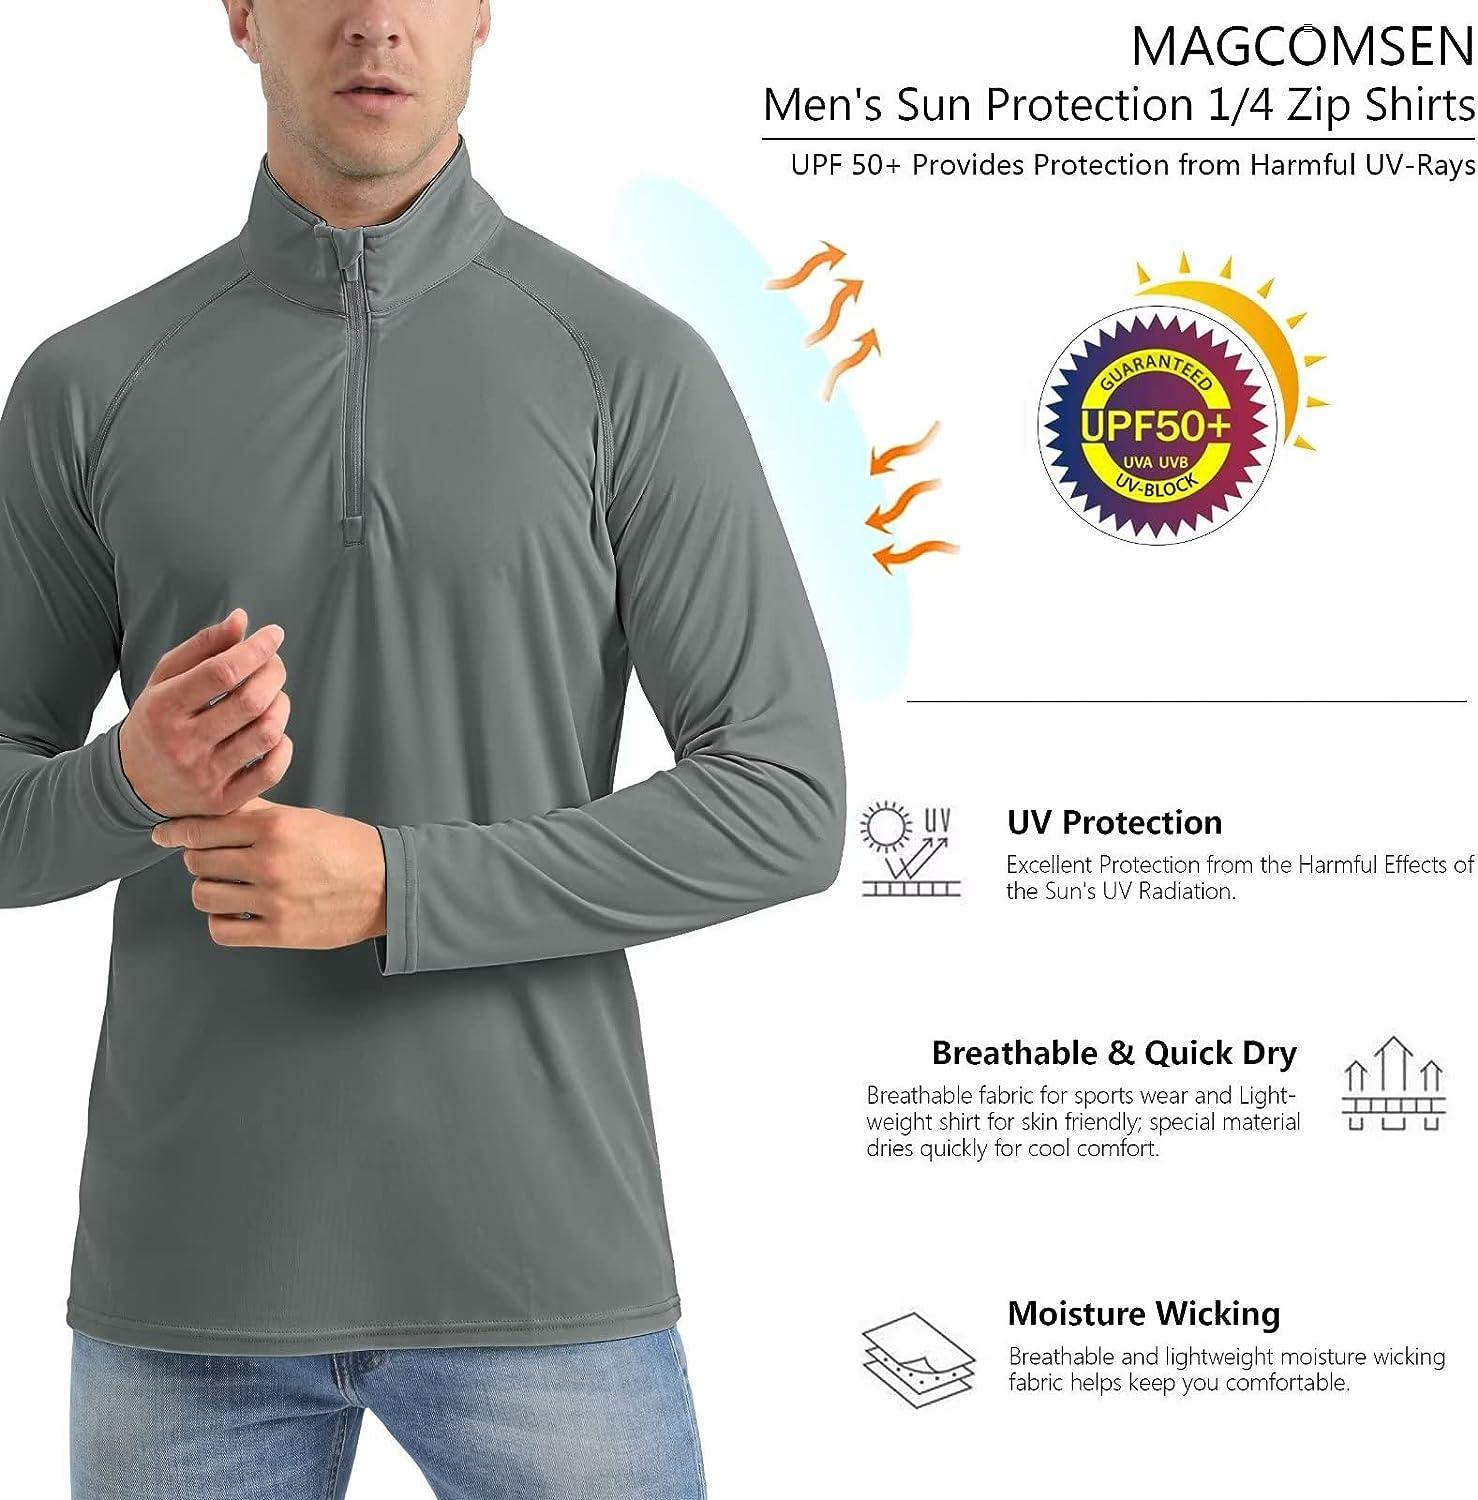 MAGCOMSEN Men's Hooded UV Sun Protection T-Shirt UPF 50+ Long